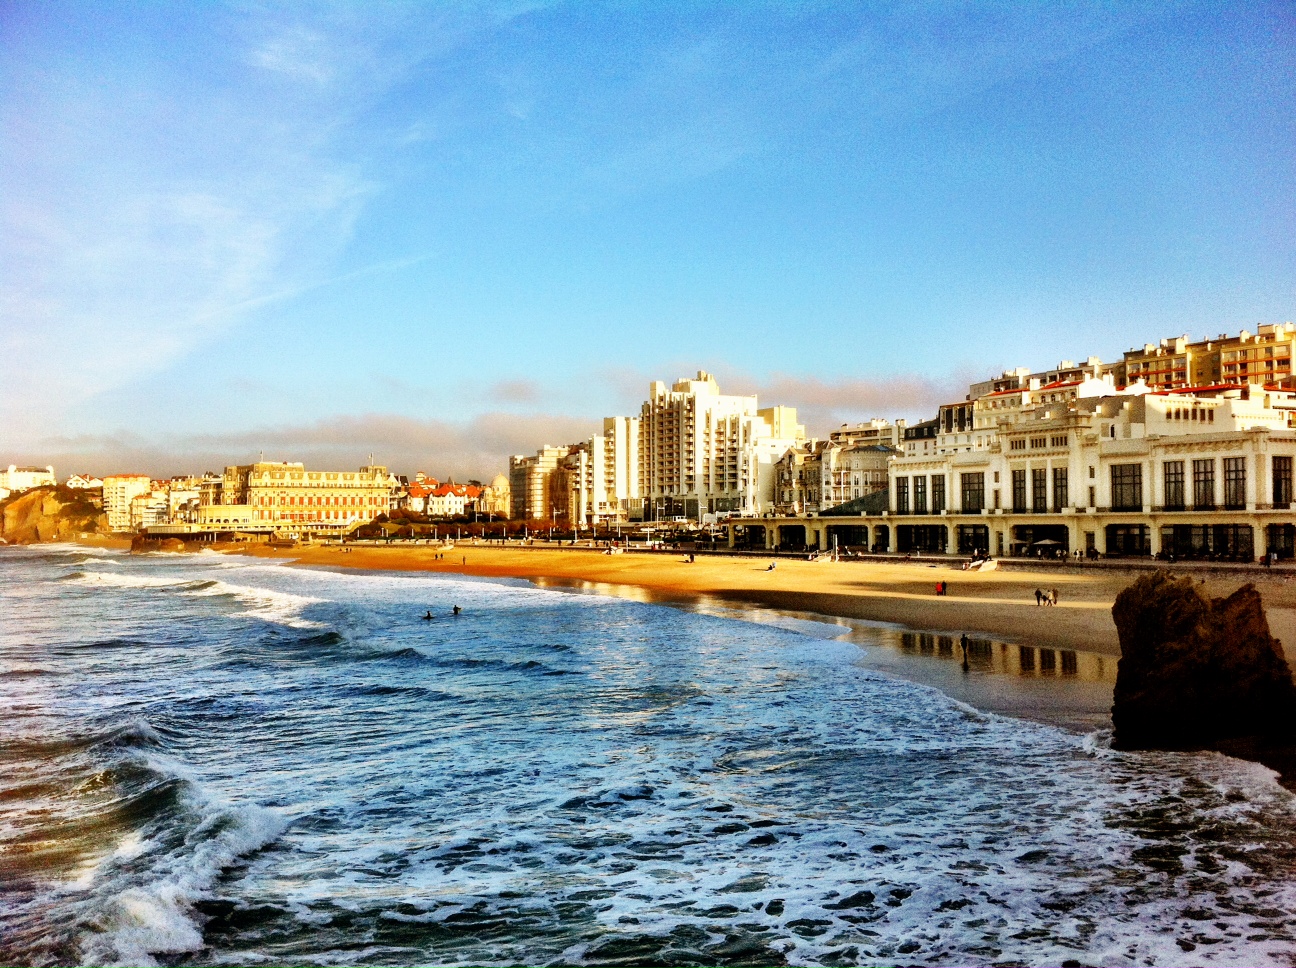 Biarritz Still Has That Sparkle